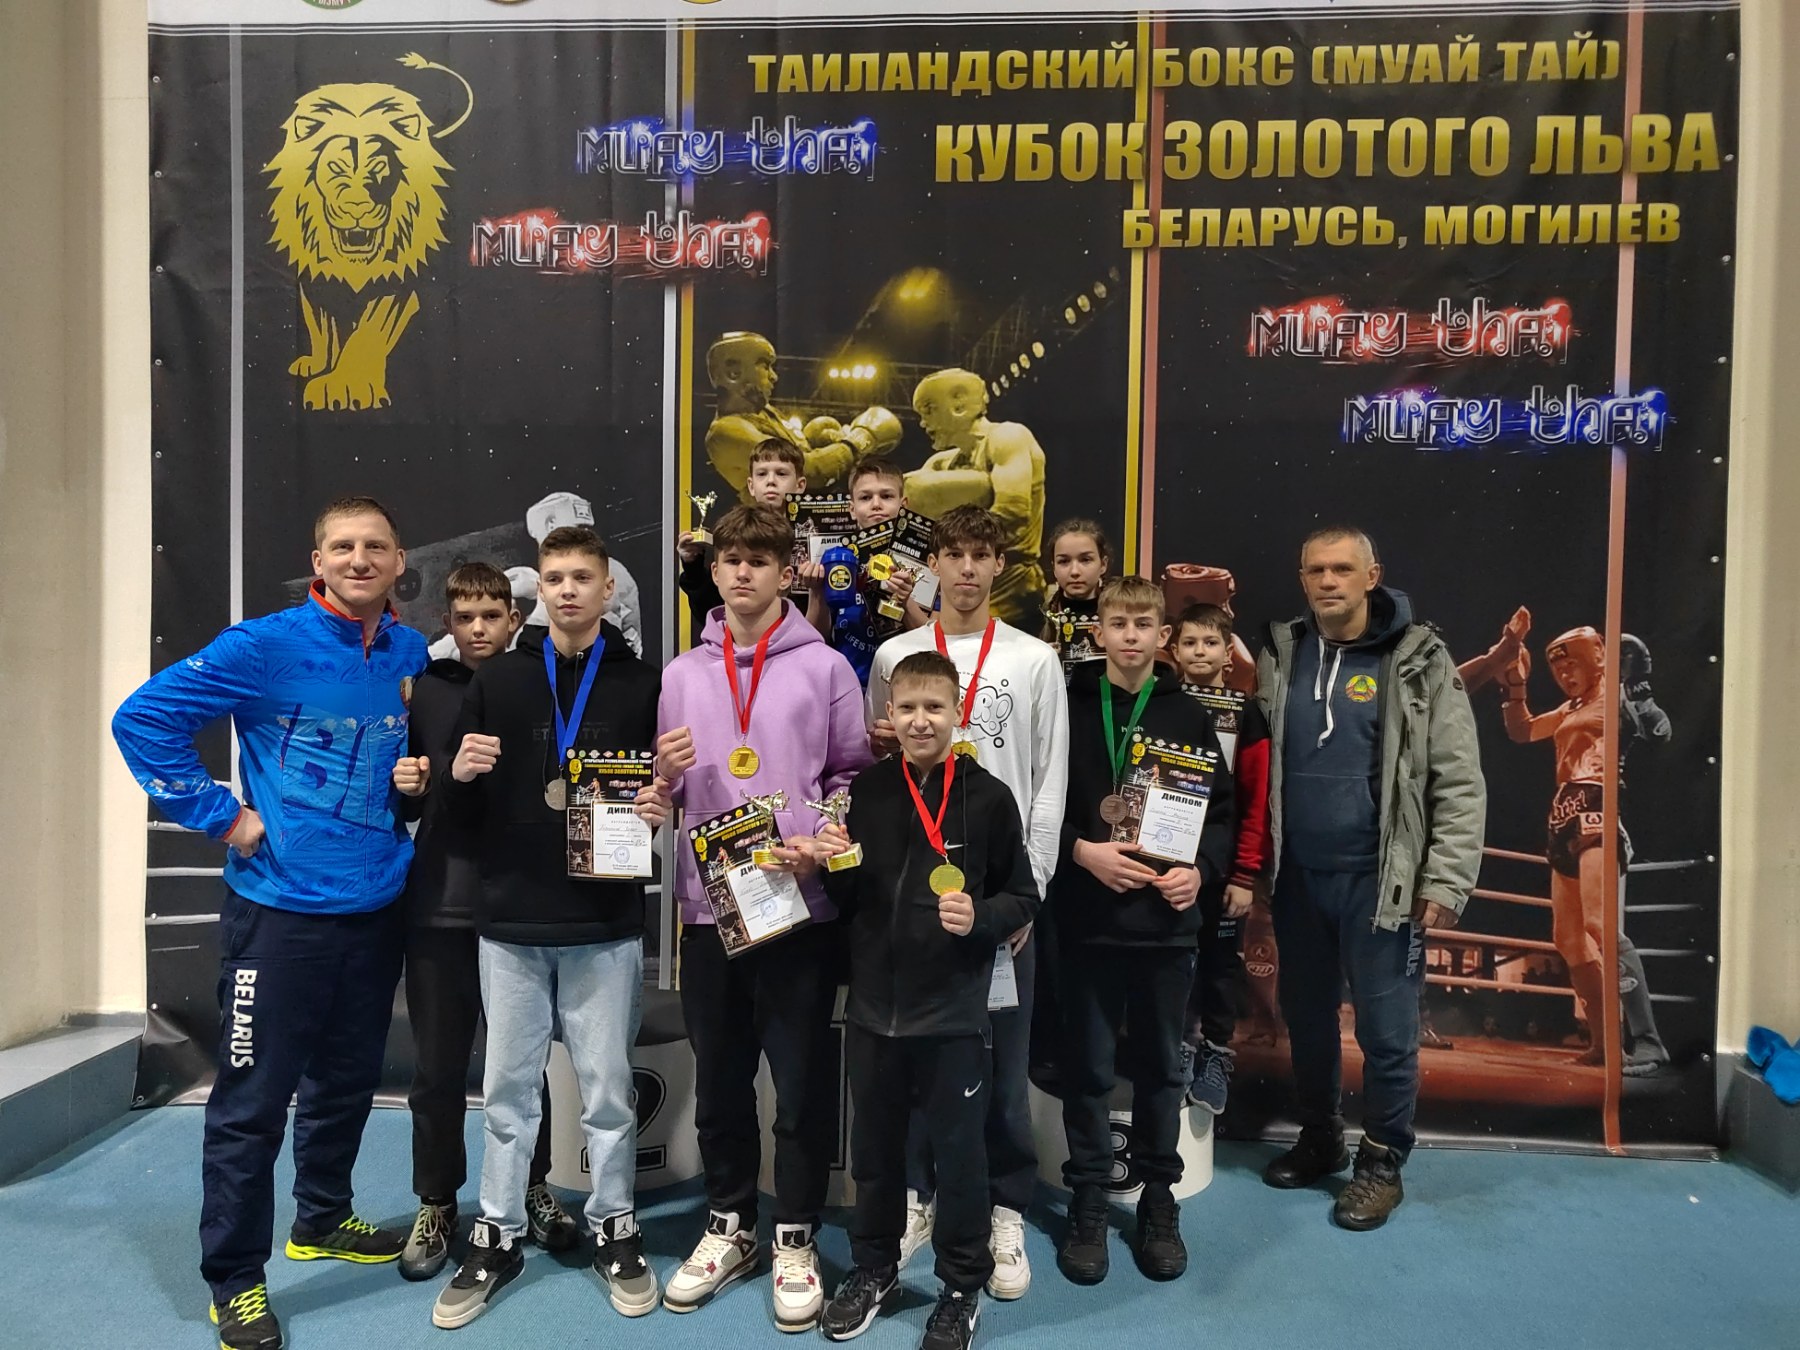 На этих выходных прошли соревнования в Могилёве "Кубок золотого льва" (19-22 января)